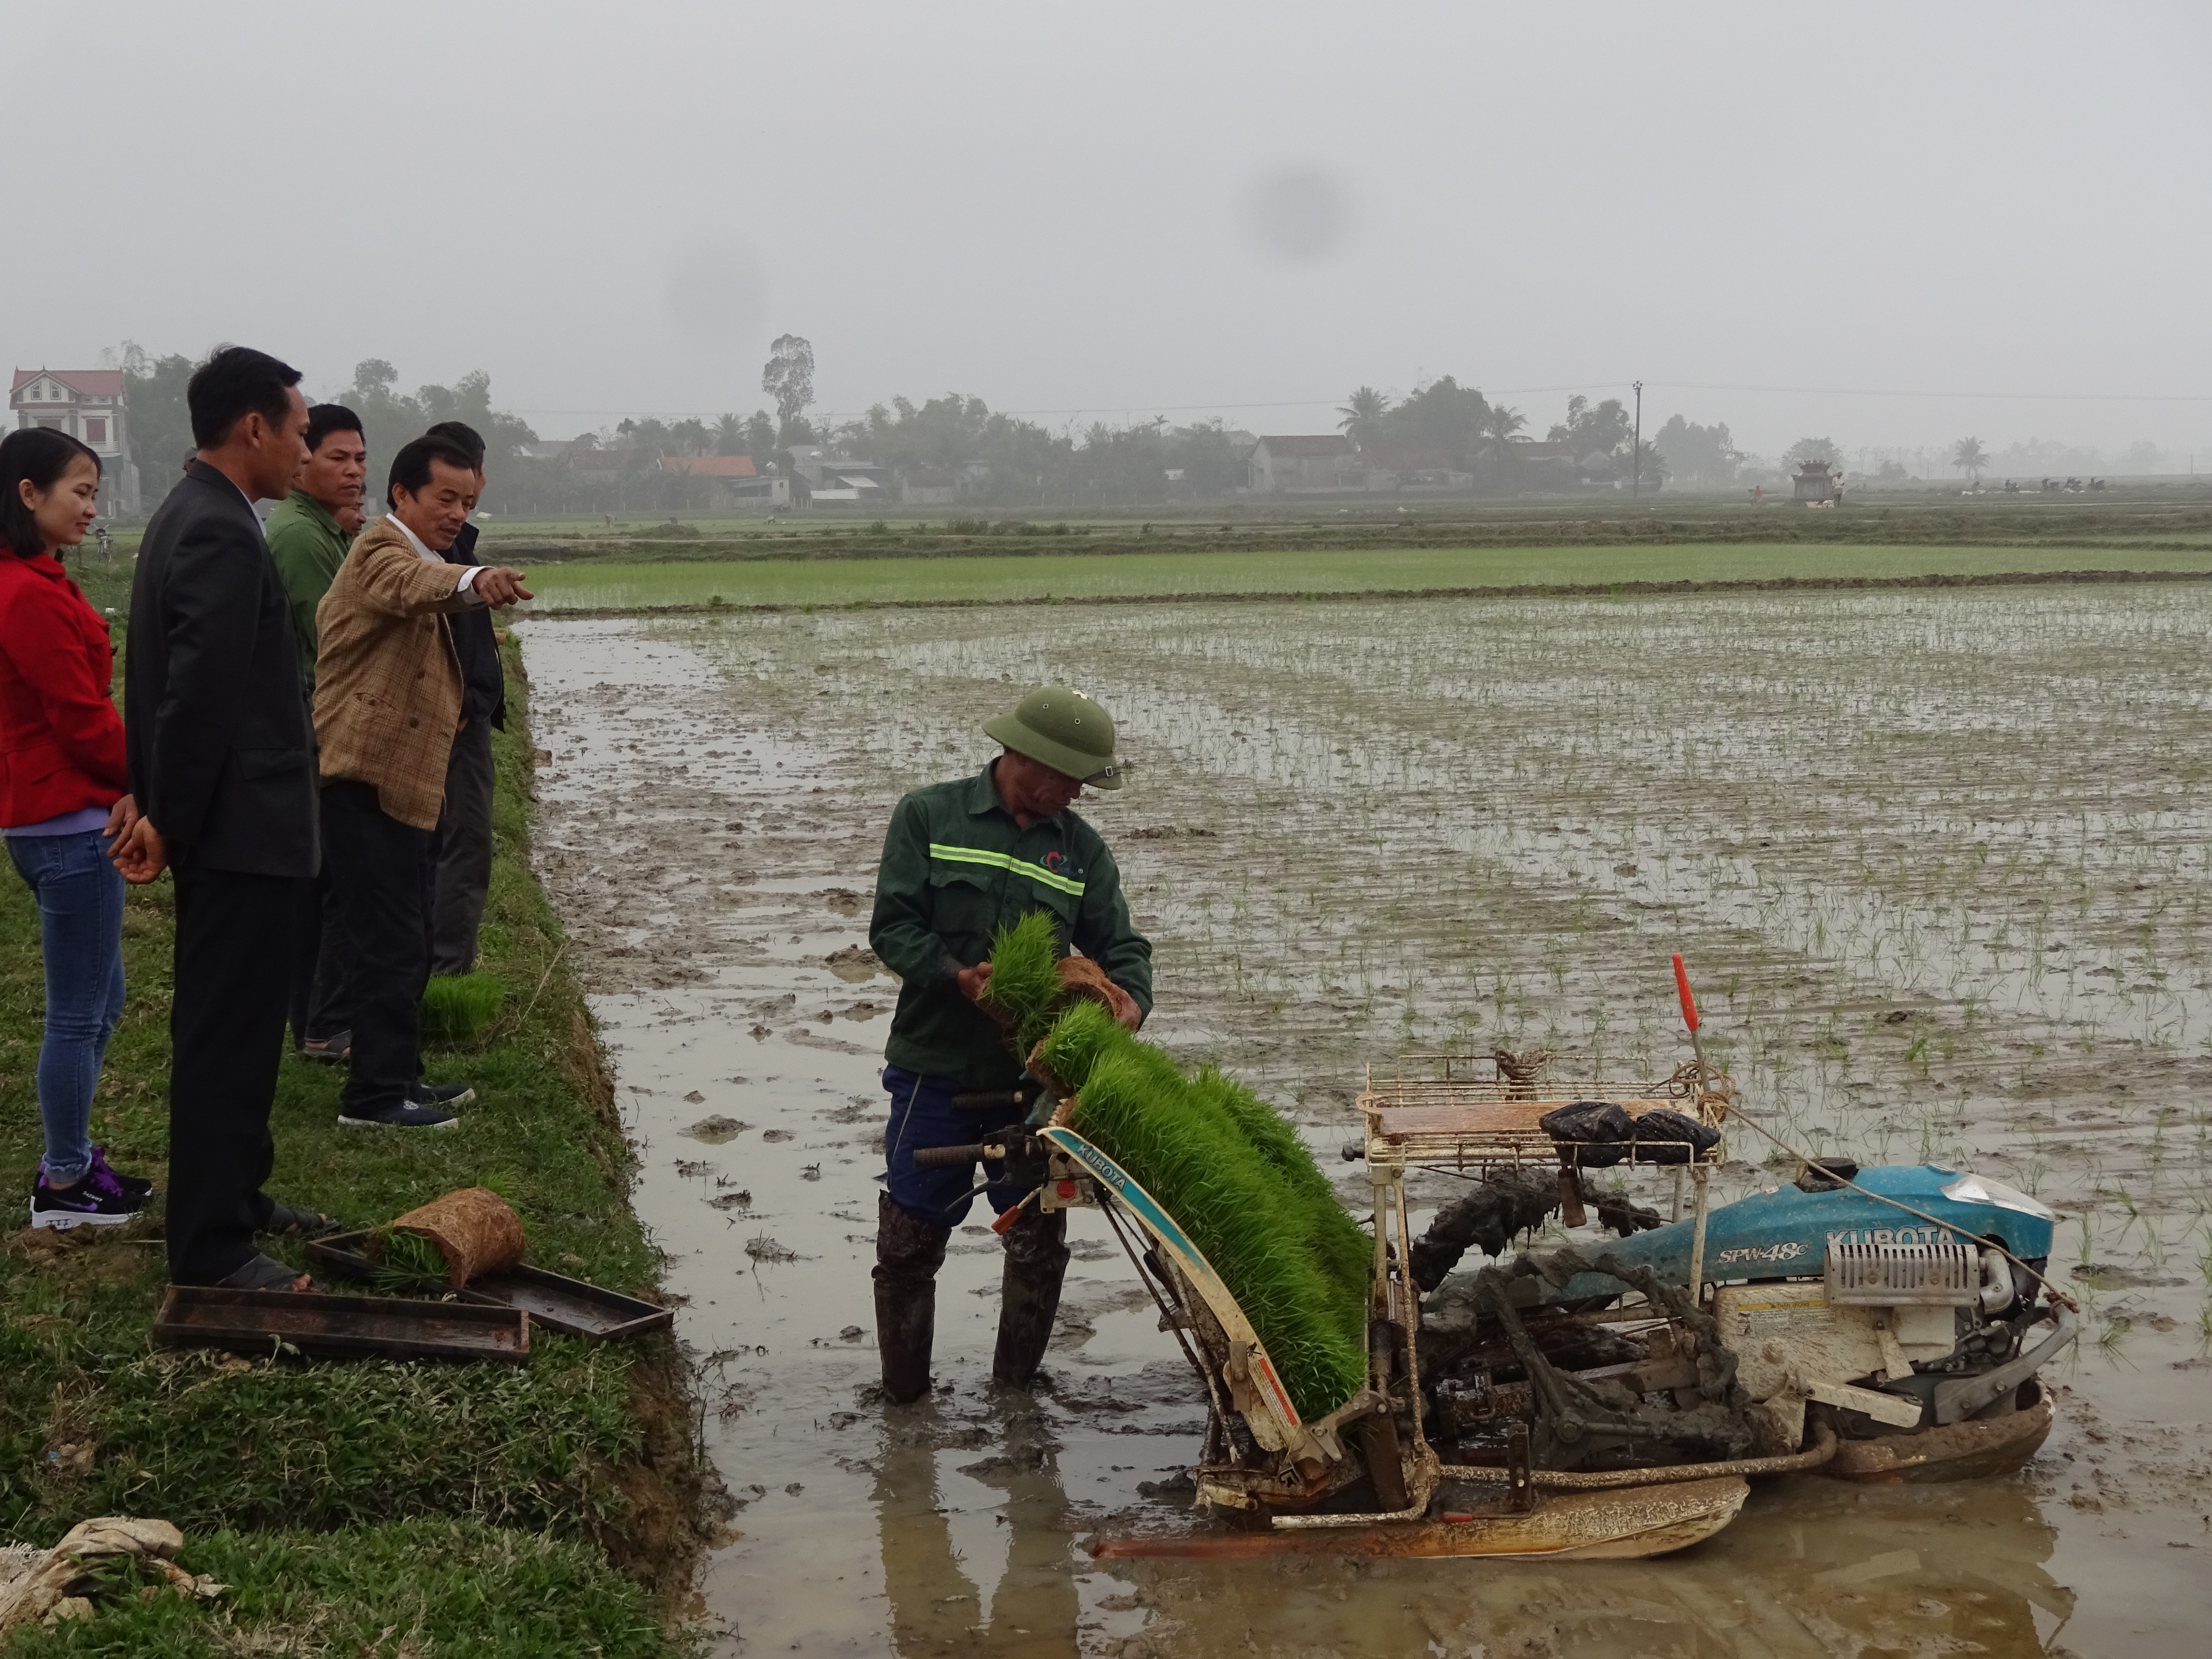 Vụ xuân 2019, xã Thọ thành có 30 ha diện tích lúa được cấy bằng máy. Ảnh: Thái Hồng